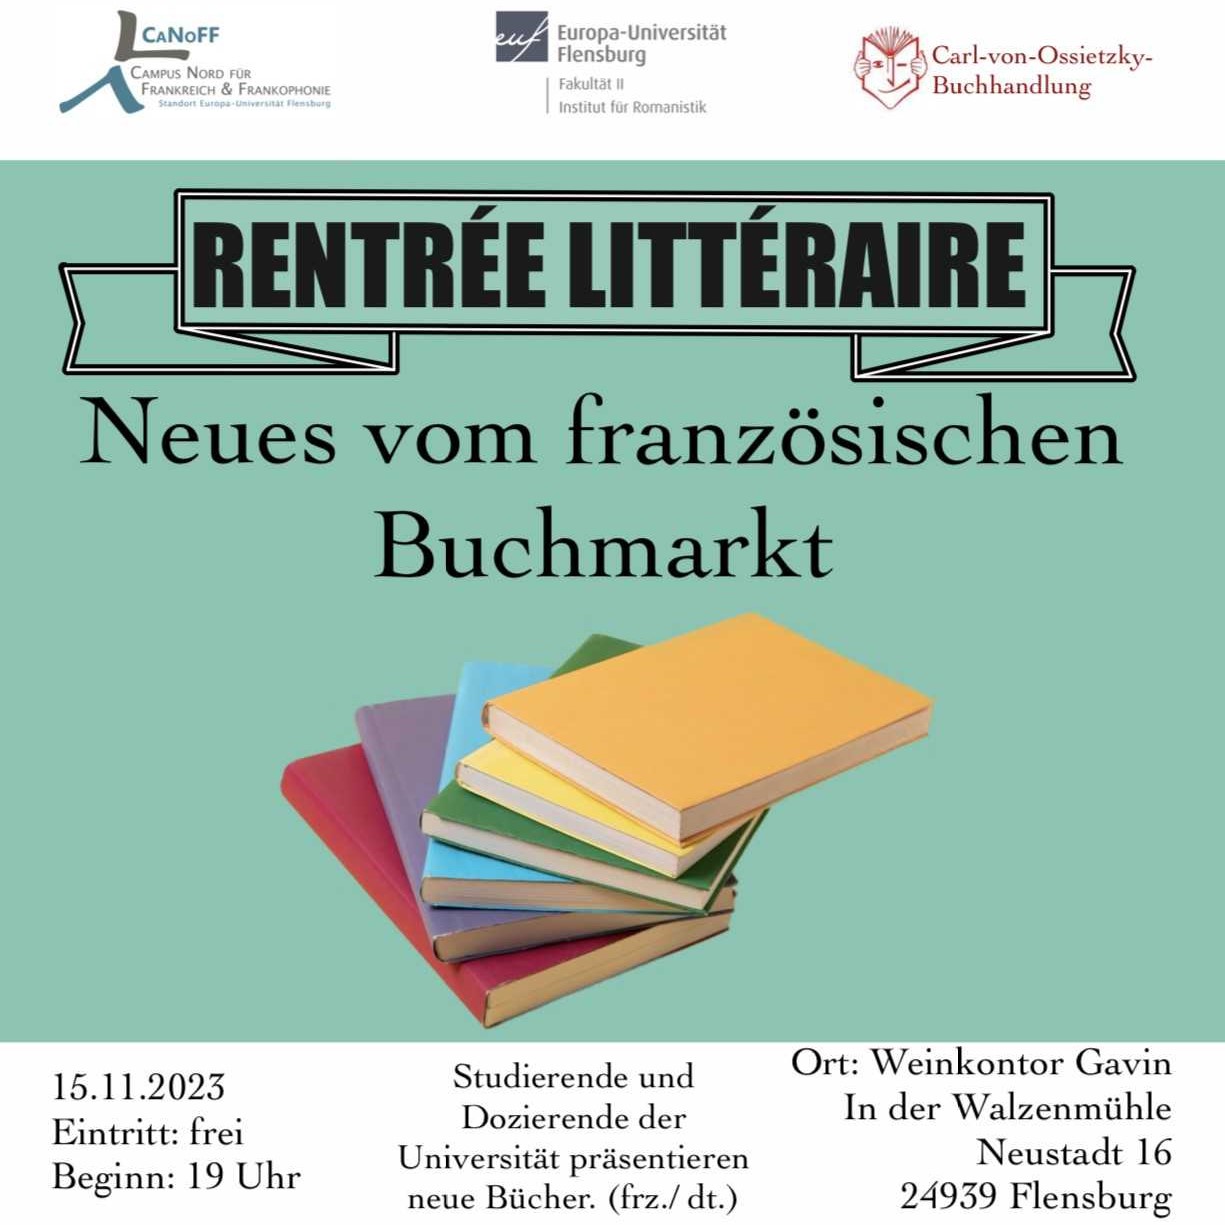 Rentrée littéraire: Neues vom französischen Buchmarkt